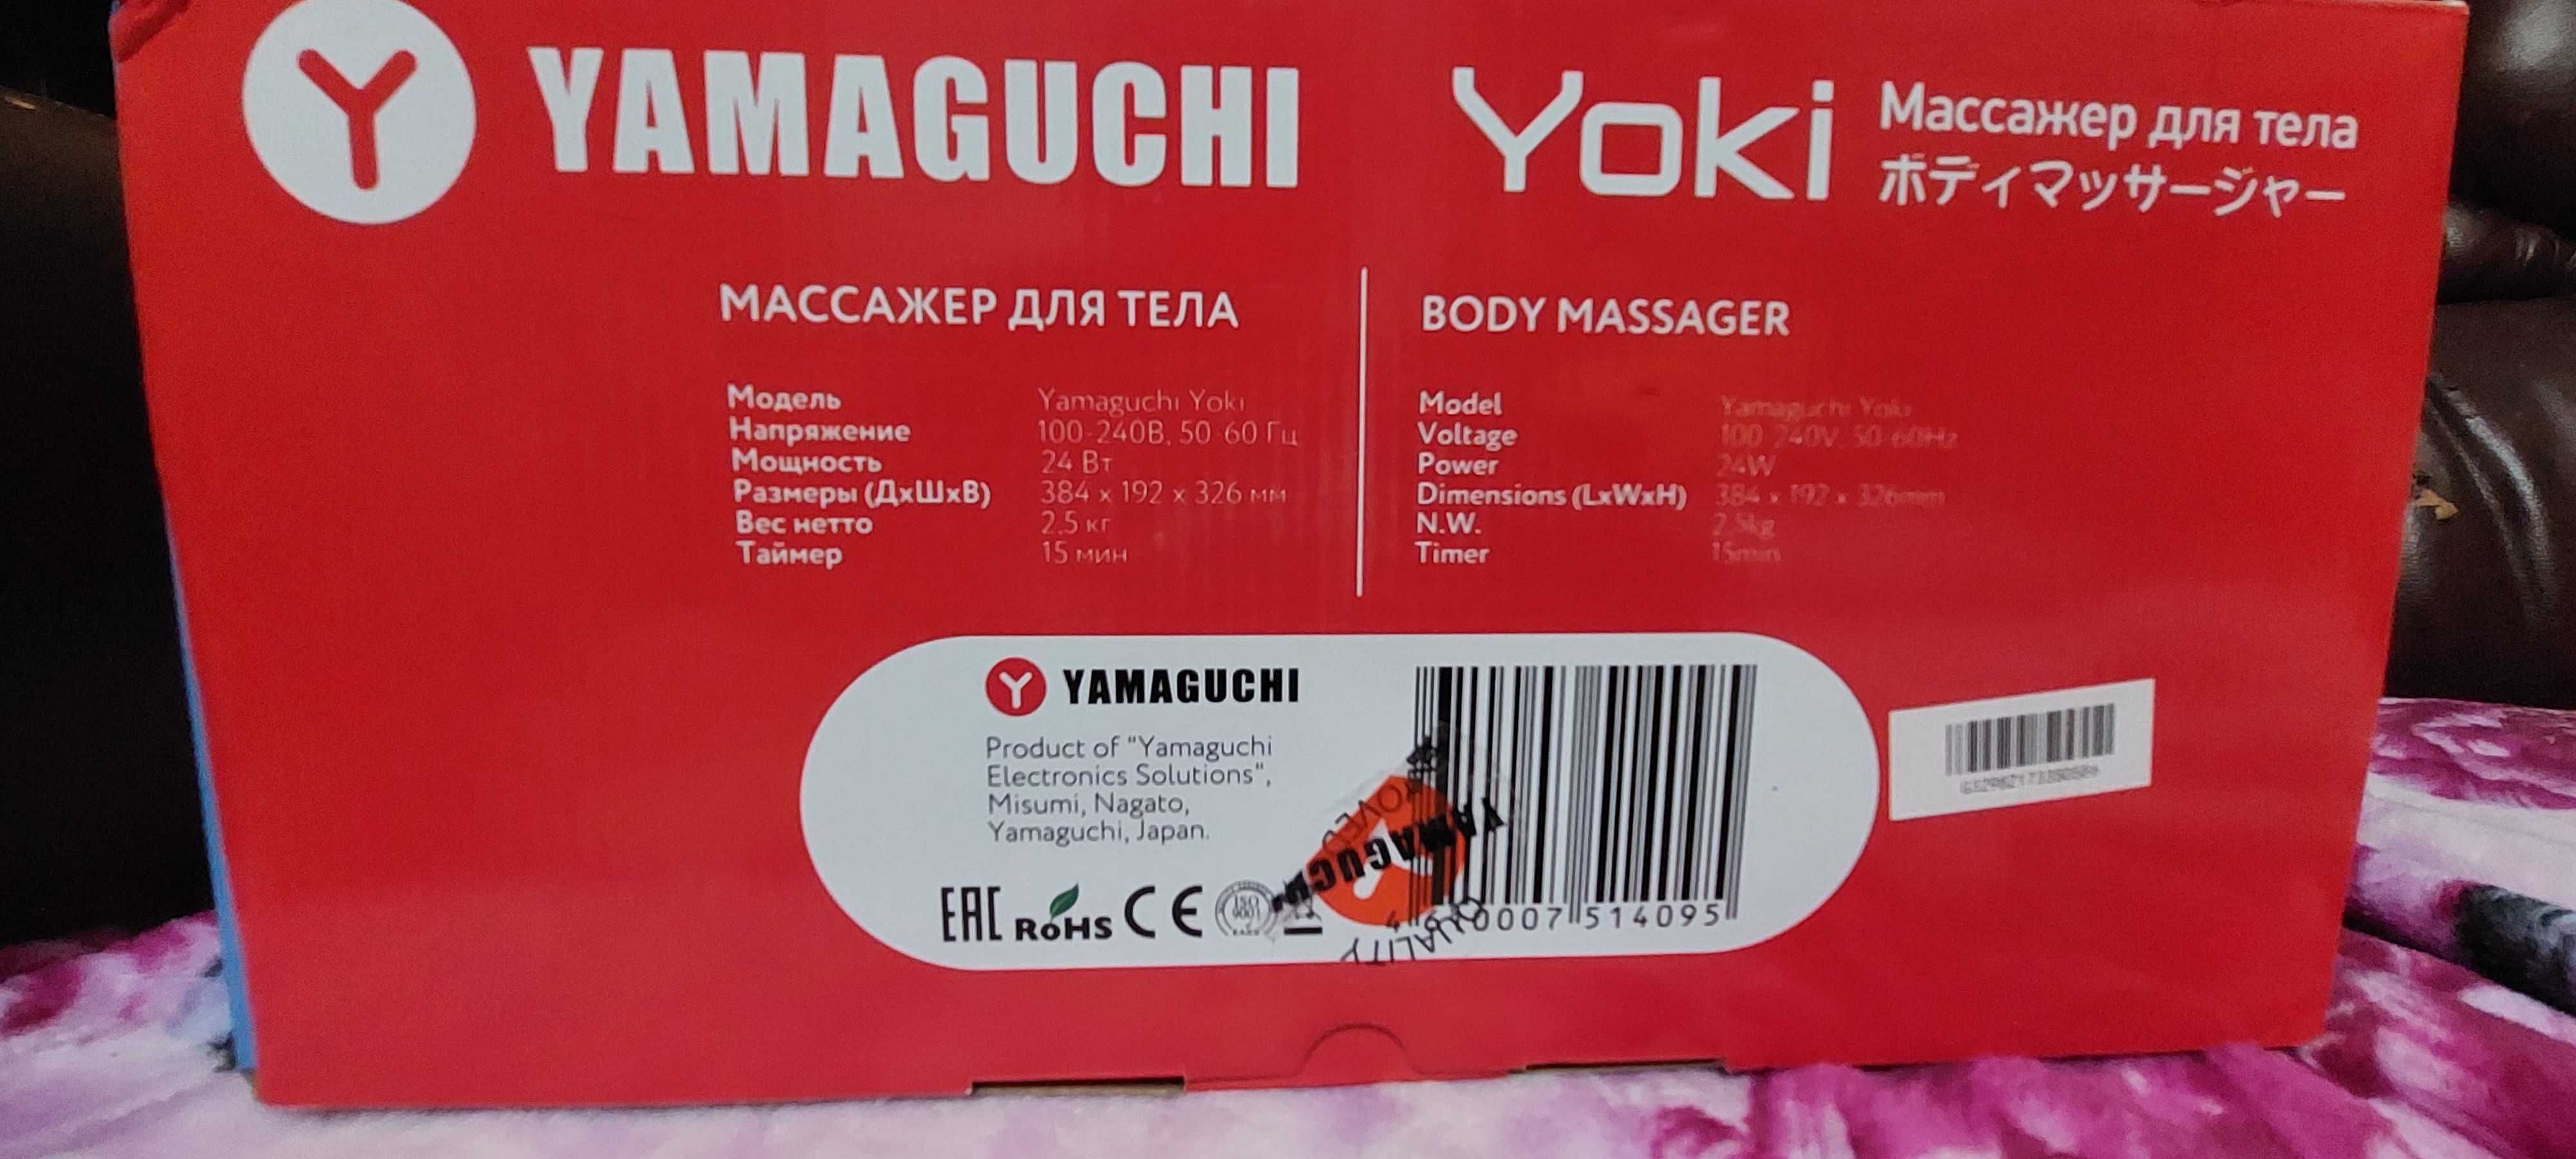 Массажер для тела YAMAGUCHI
Yoki